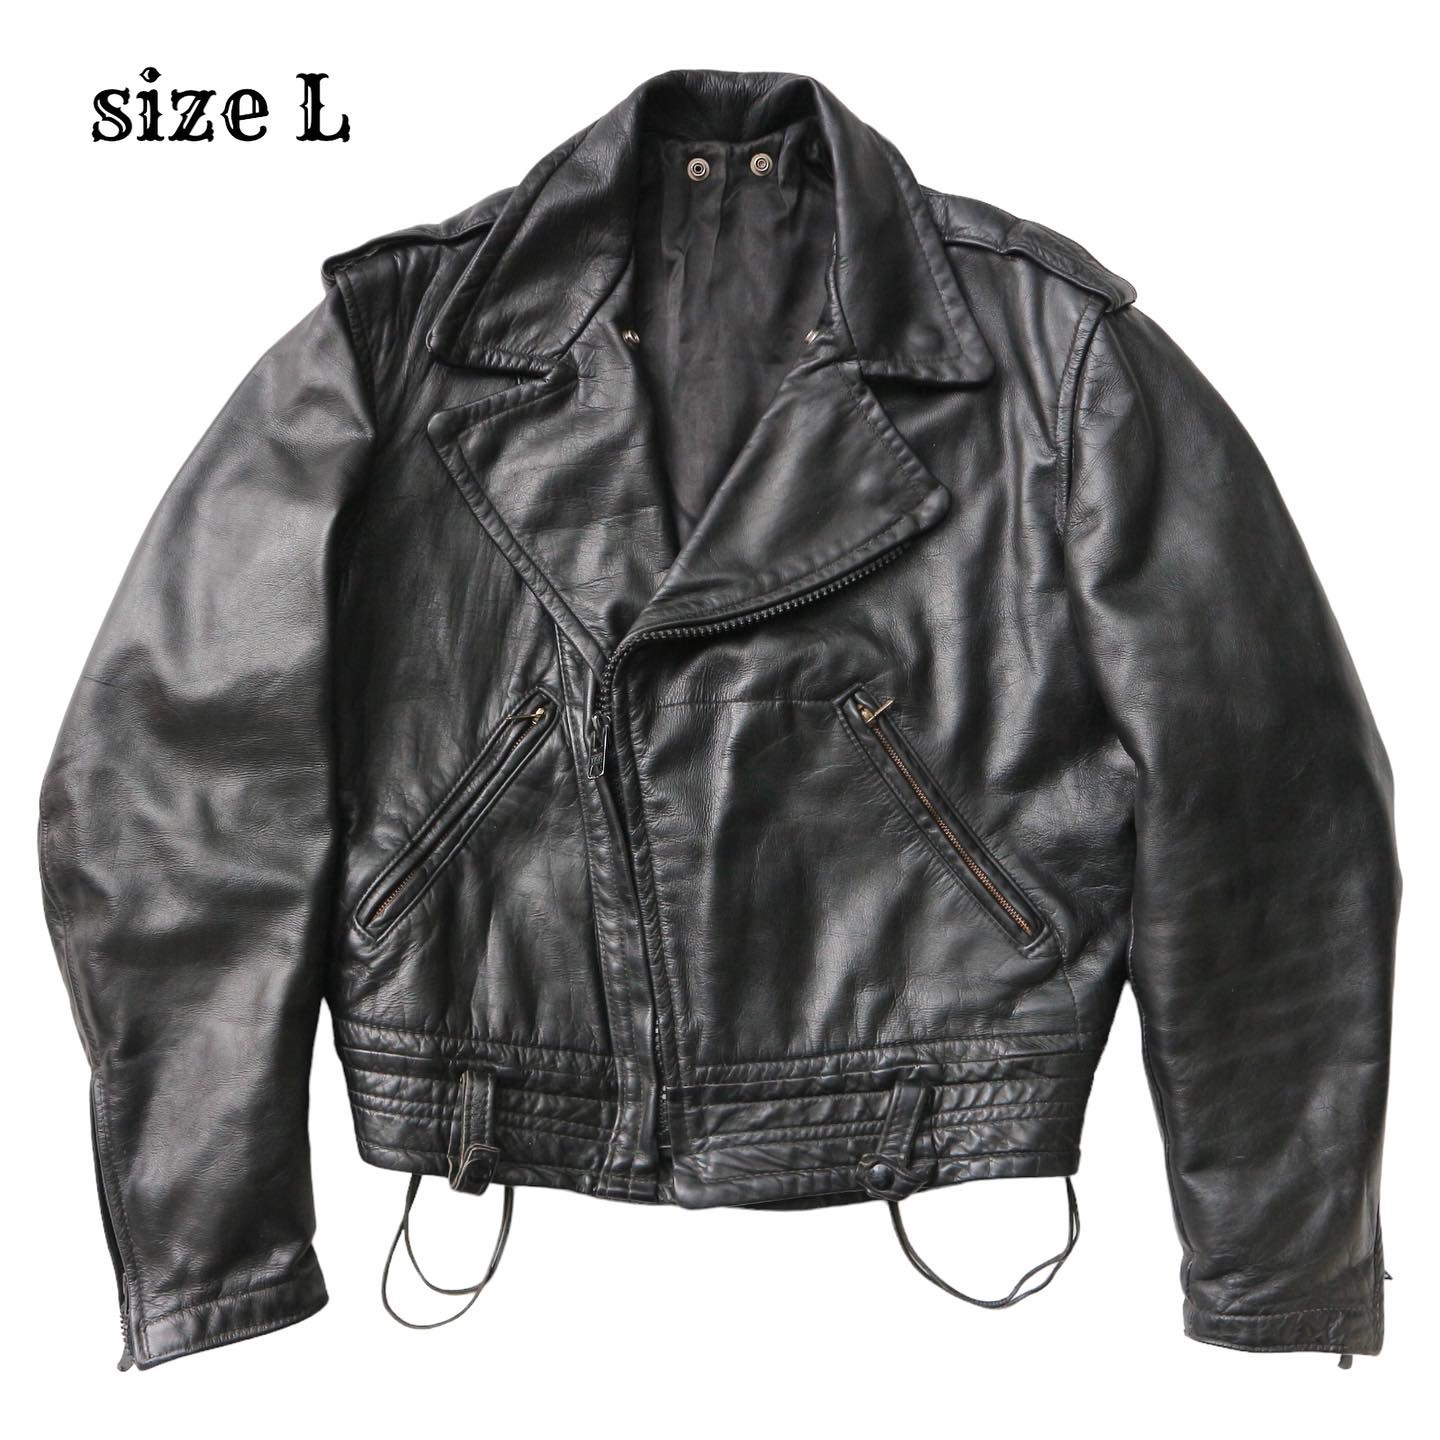 Vintage Cal Leather Jacket Size L